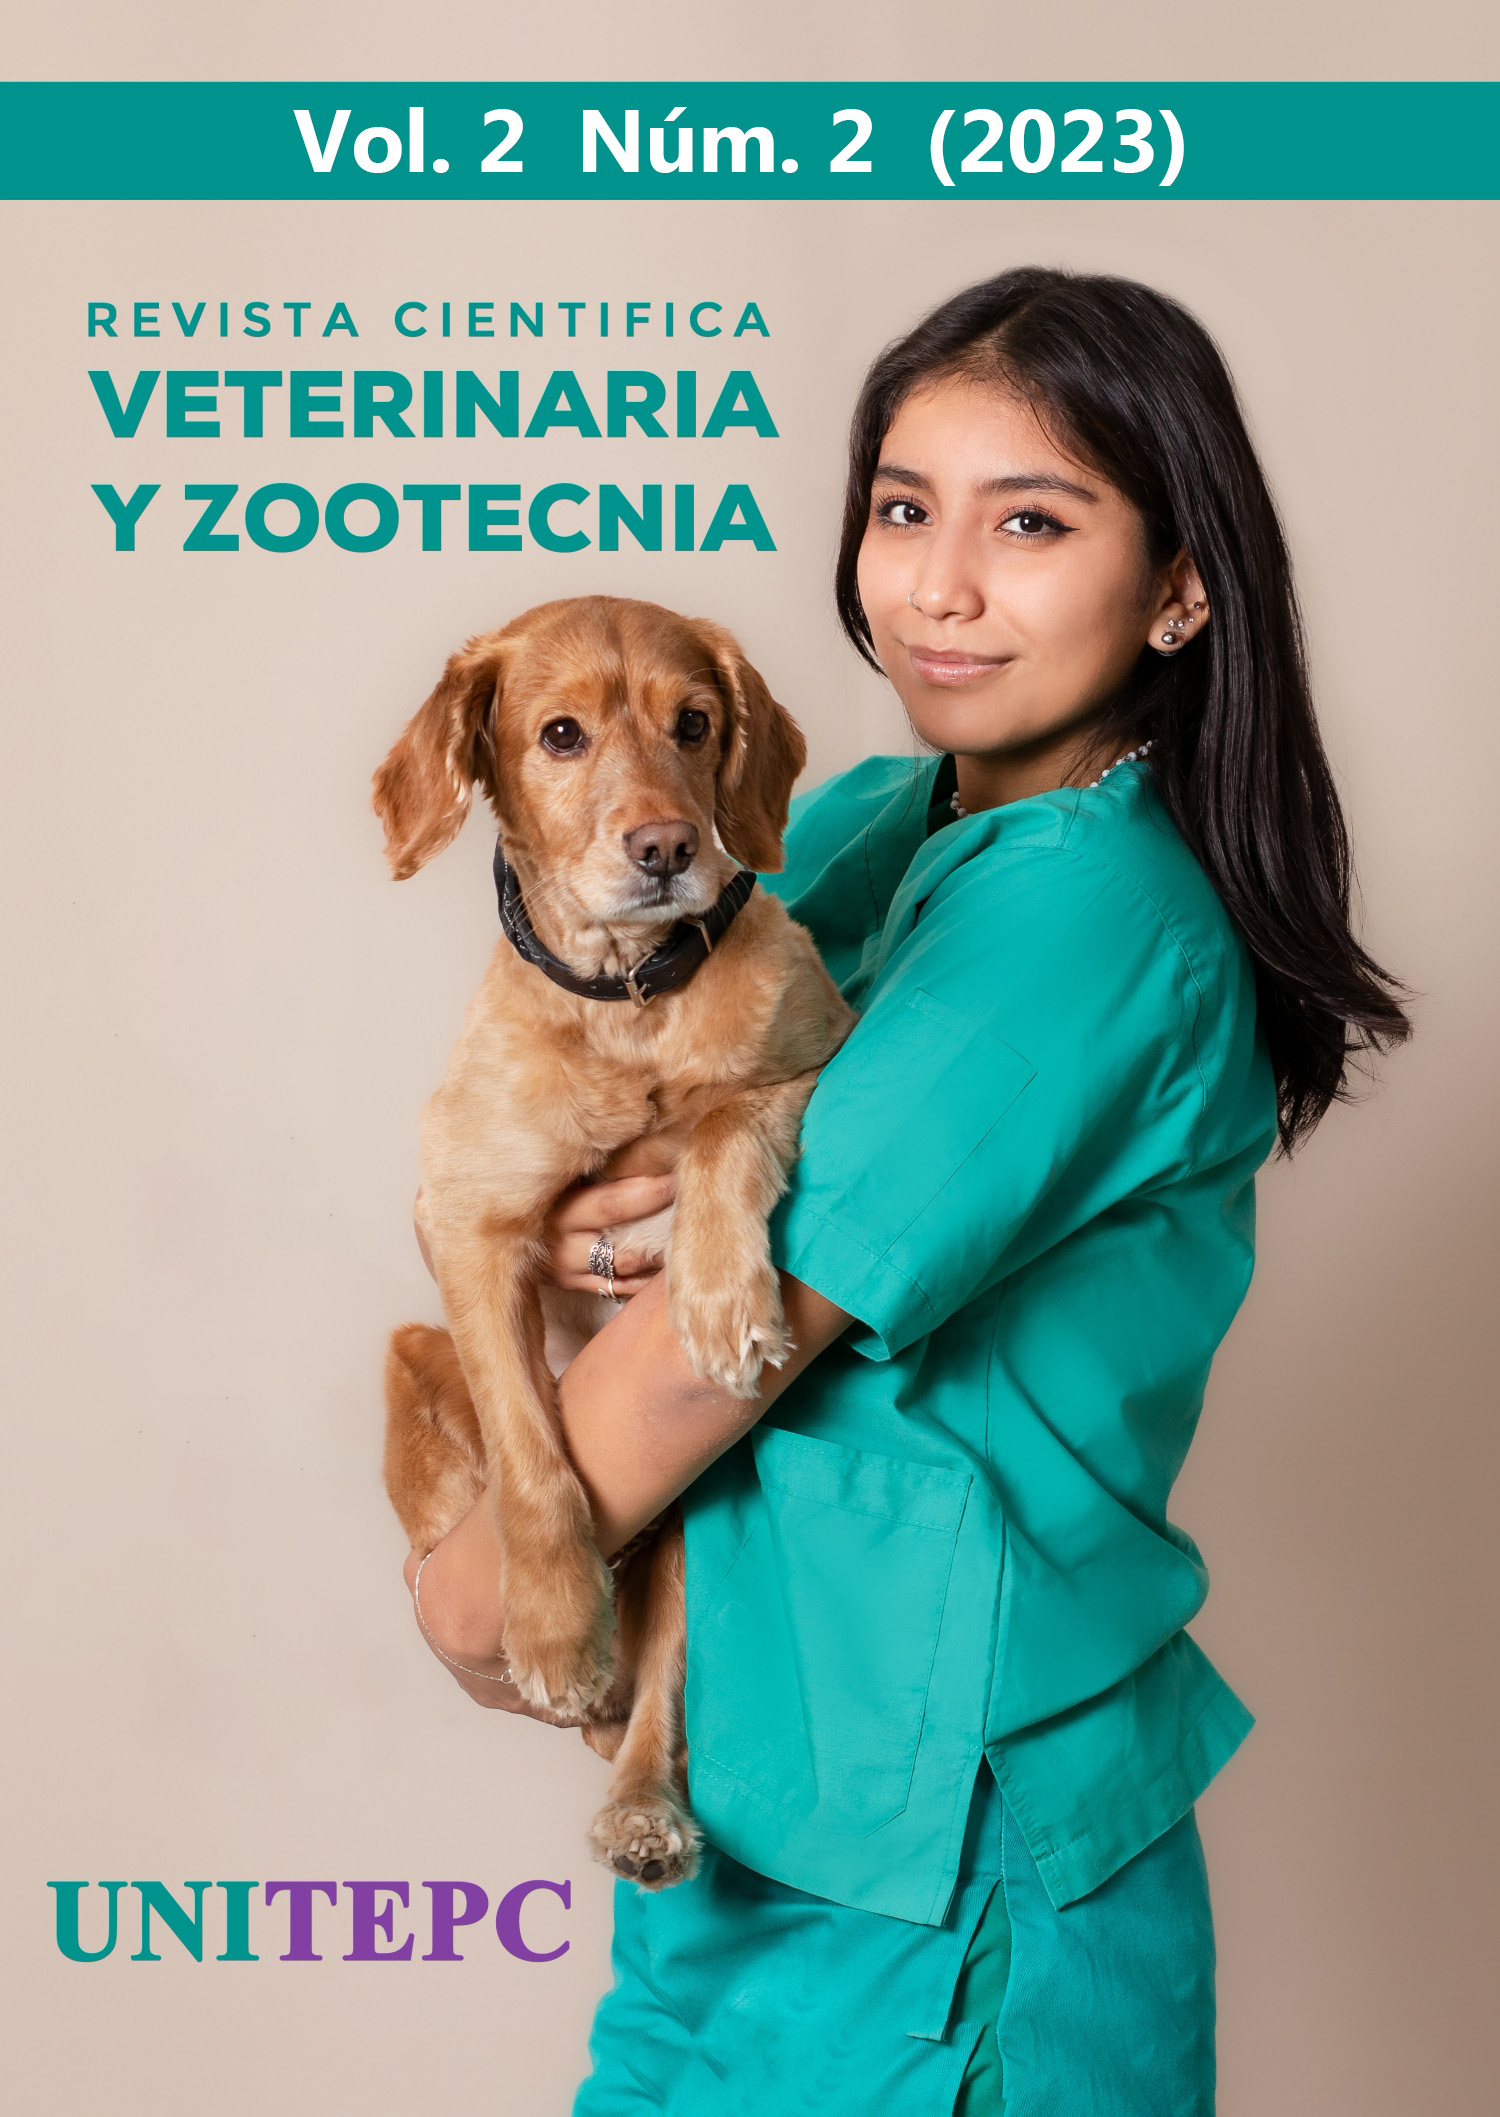 					Ver Vol. 2 Núm. 2 (2023): Revista Científica de Veterinaria y Zootecnia UNITEPC
				